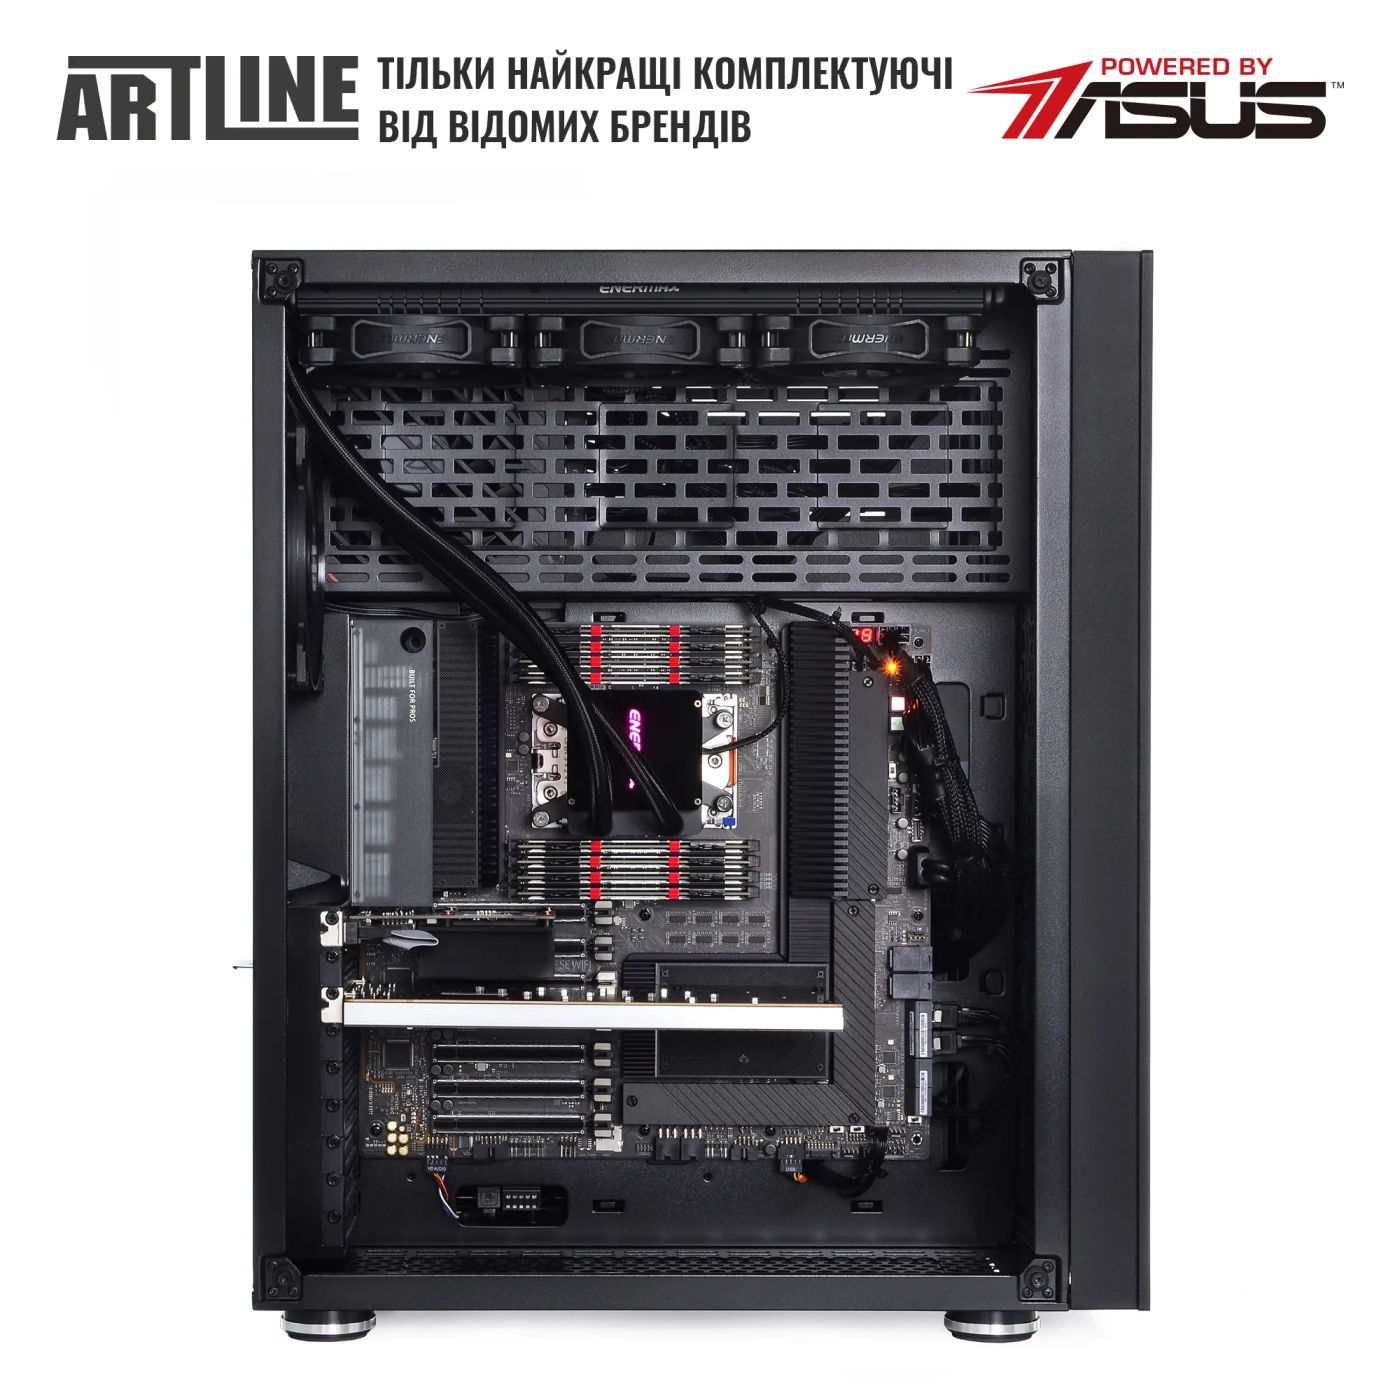 Купить Сервер ARTLINE Business T85v08Win - фото 5